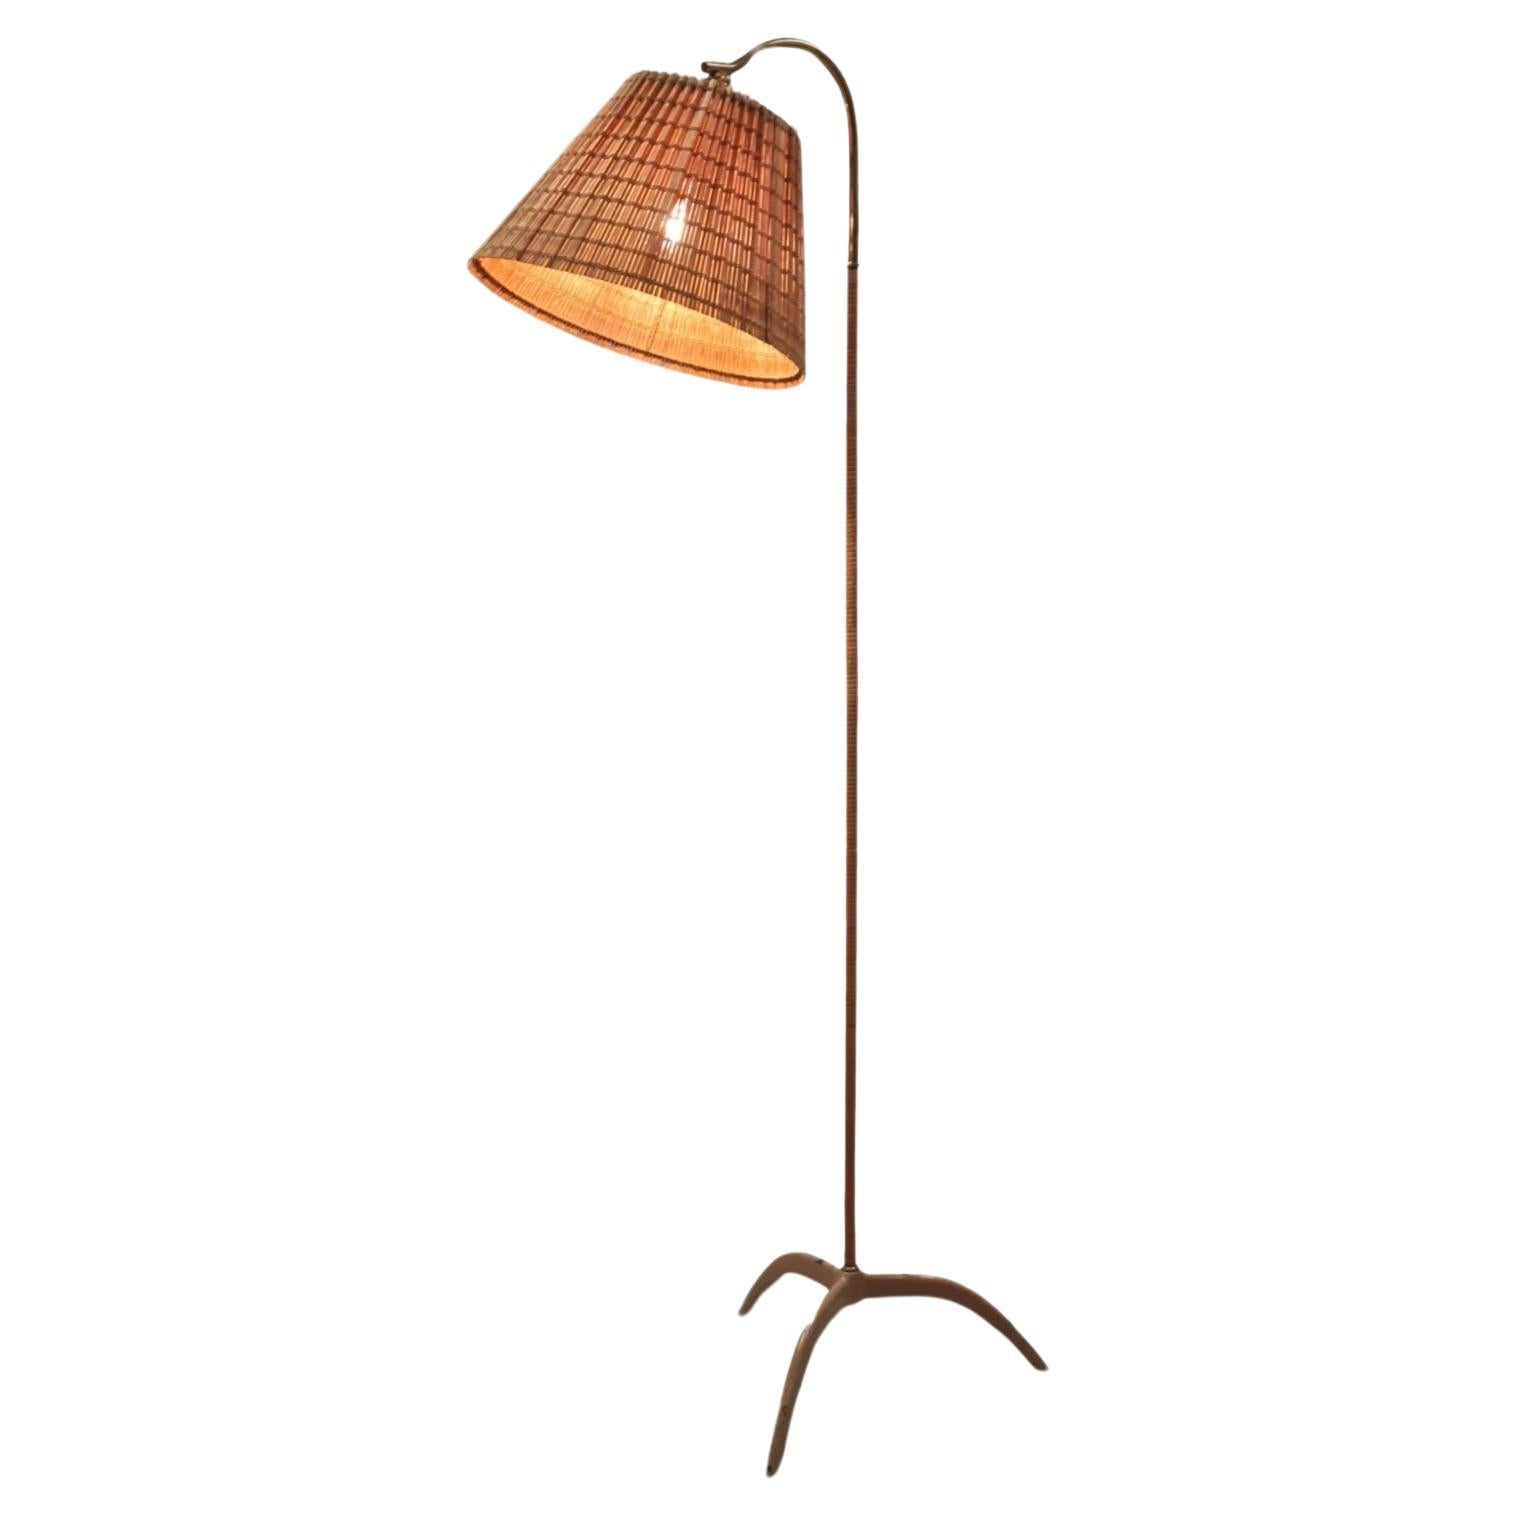 Paavo Tynell Floor Lamp model. 9609, Taito